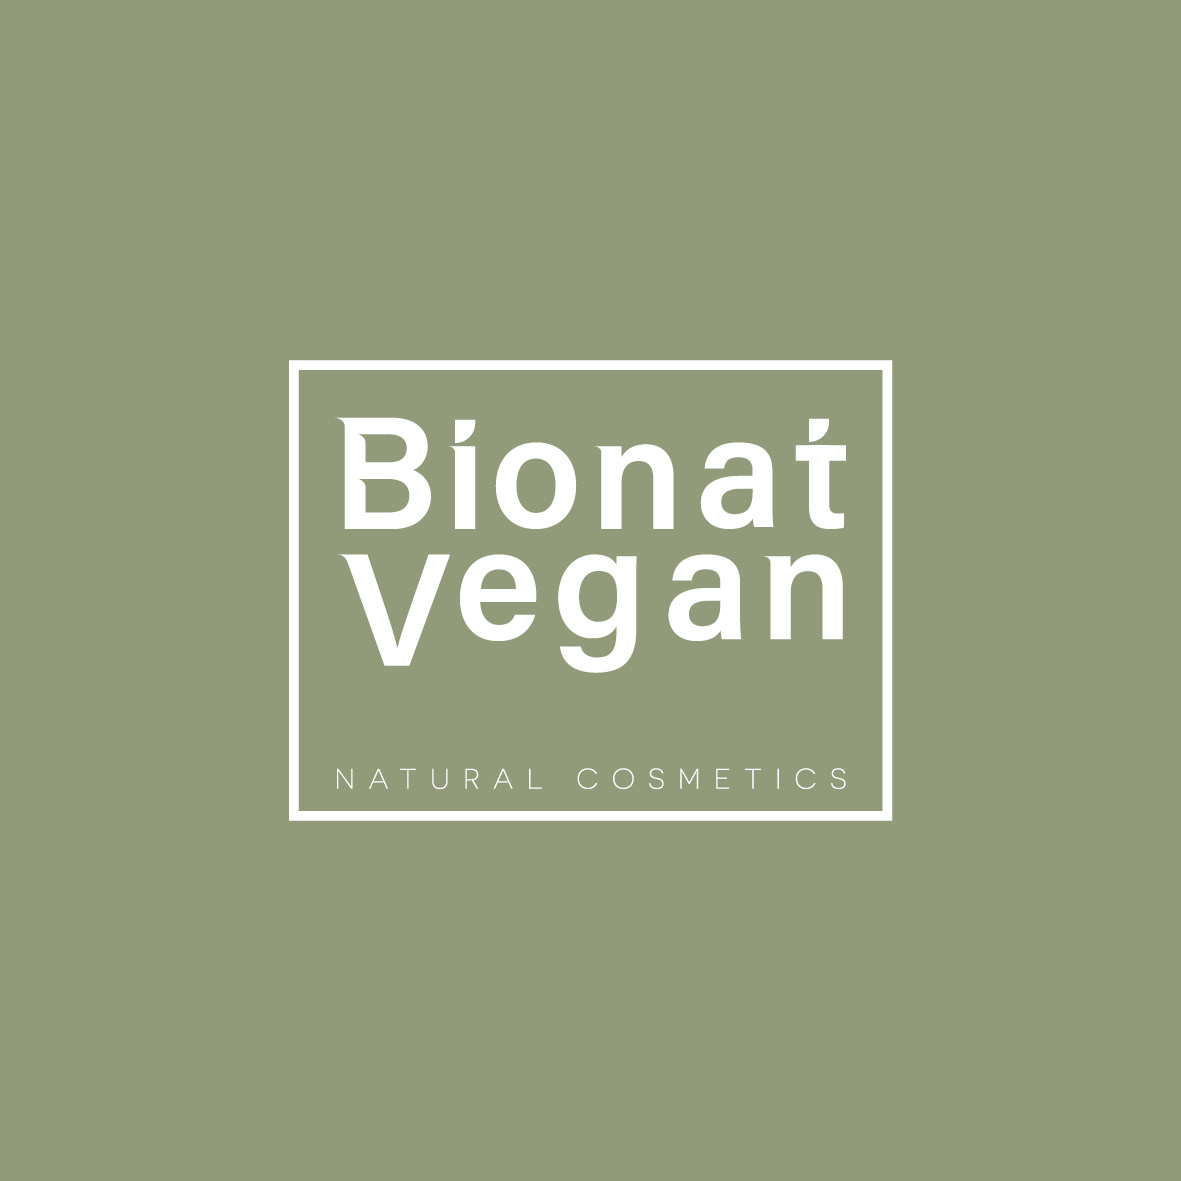 logo bionat began